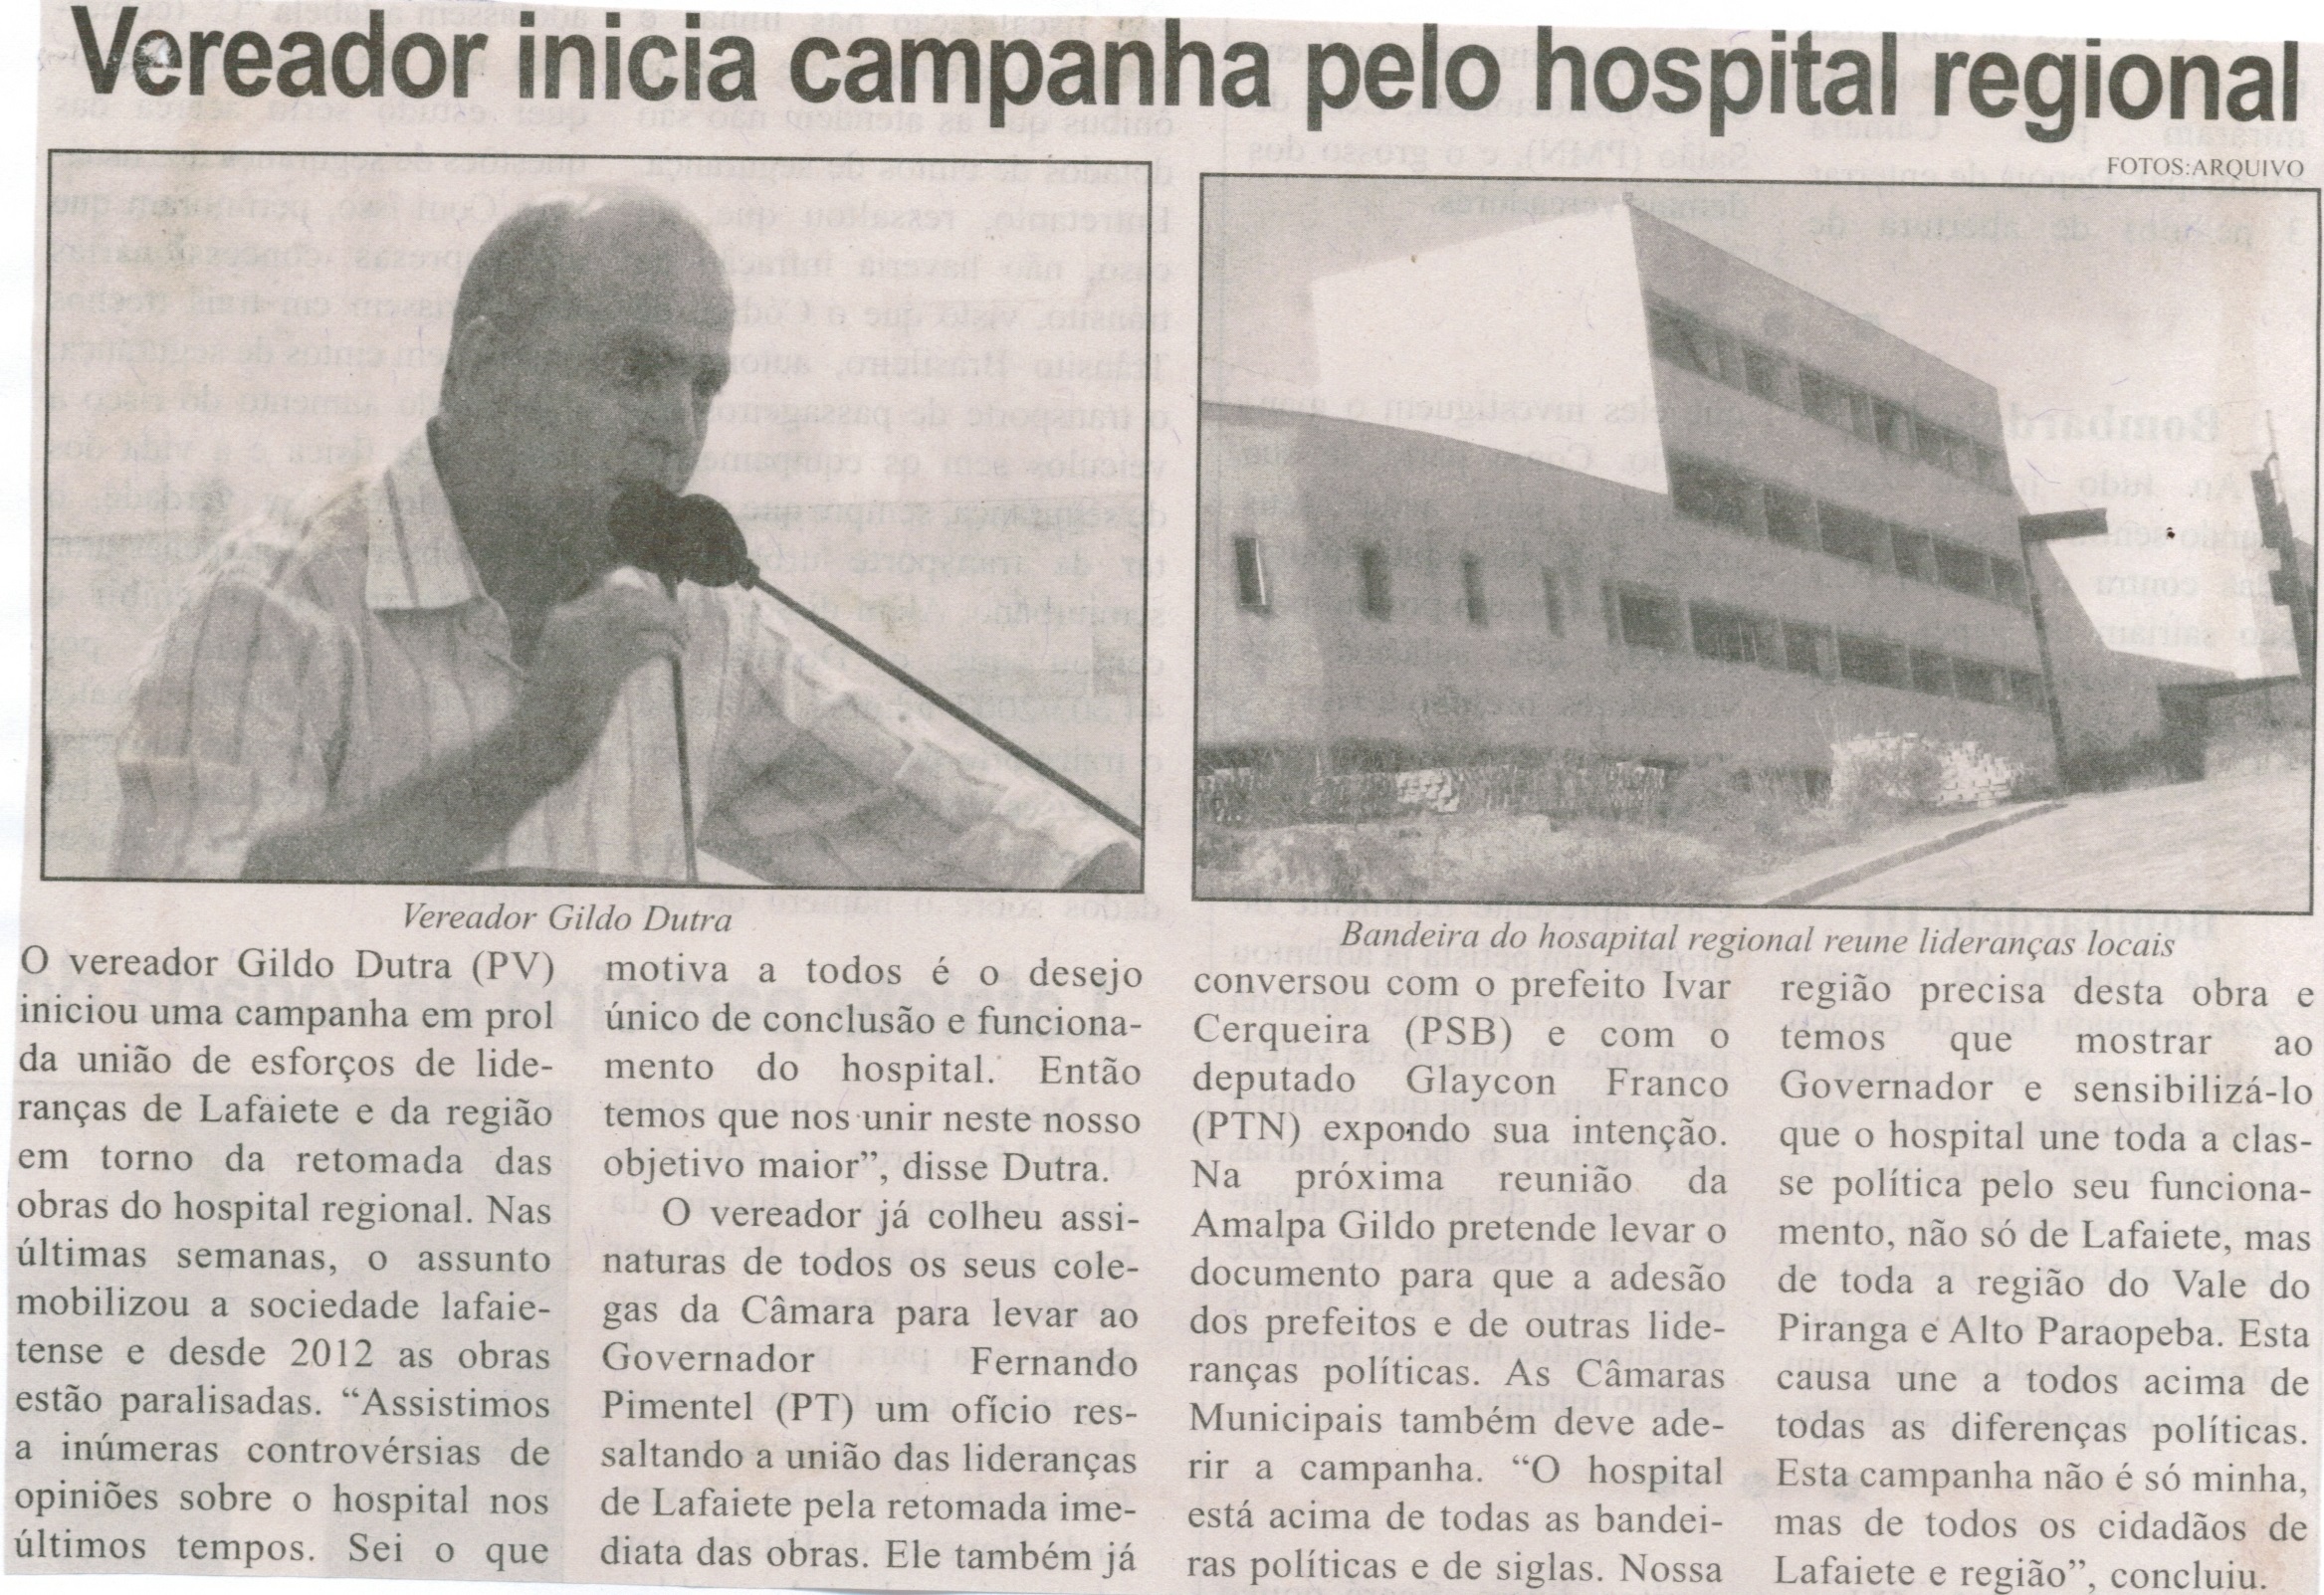 Vereador inicia campanha pelo hospital regional. Jornal Correio de Minas, Conselheiro Lafaiete, 15 ago. 2015, p. 07.